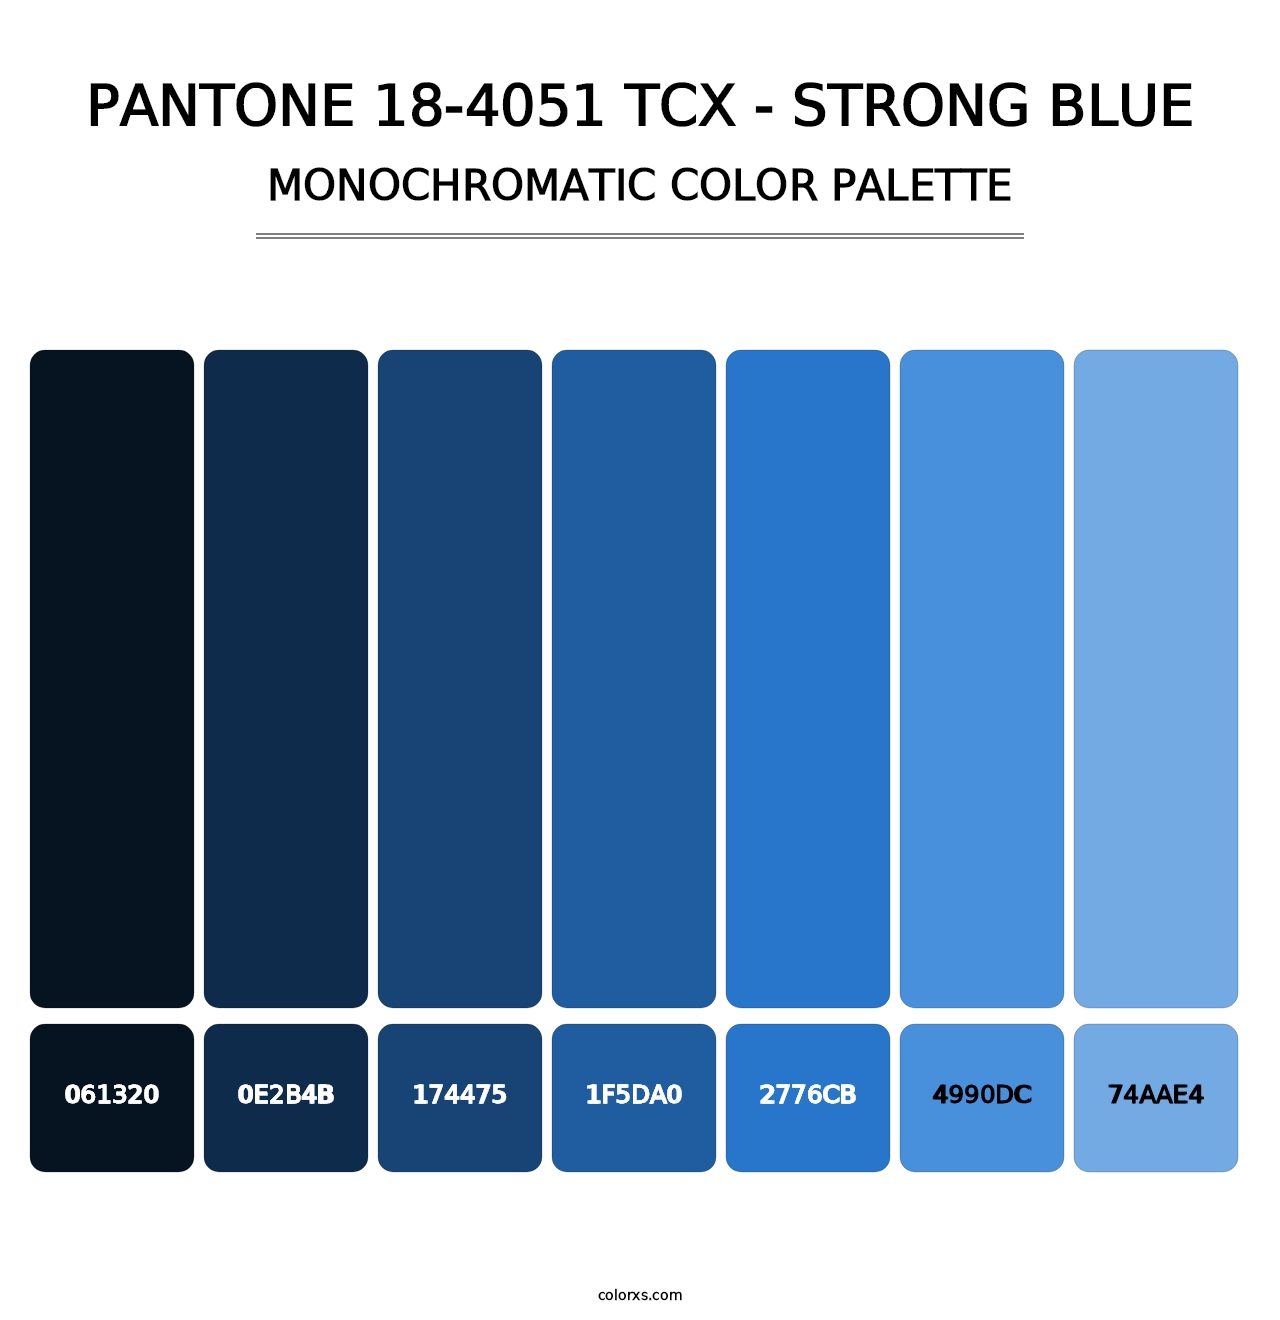 PANTONE 18-4051 TCX - Strong Blue - Monochromatic Color Palette